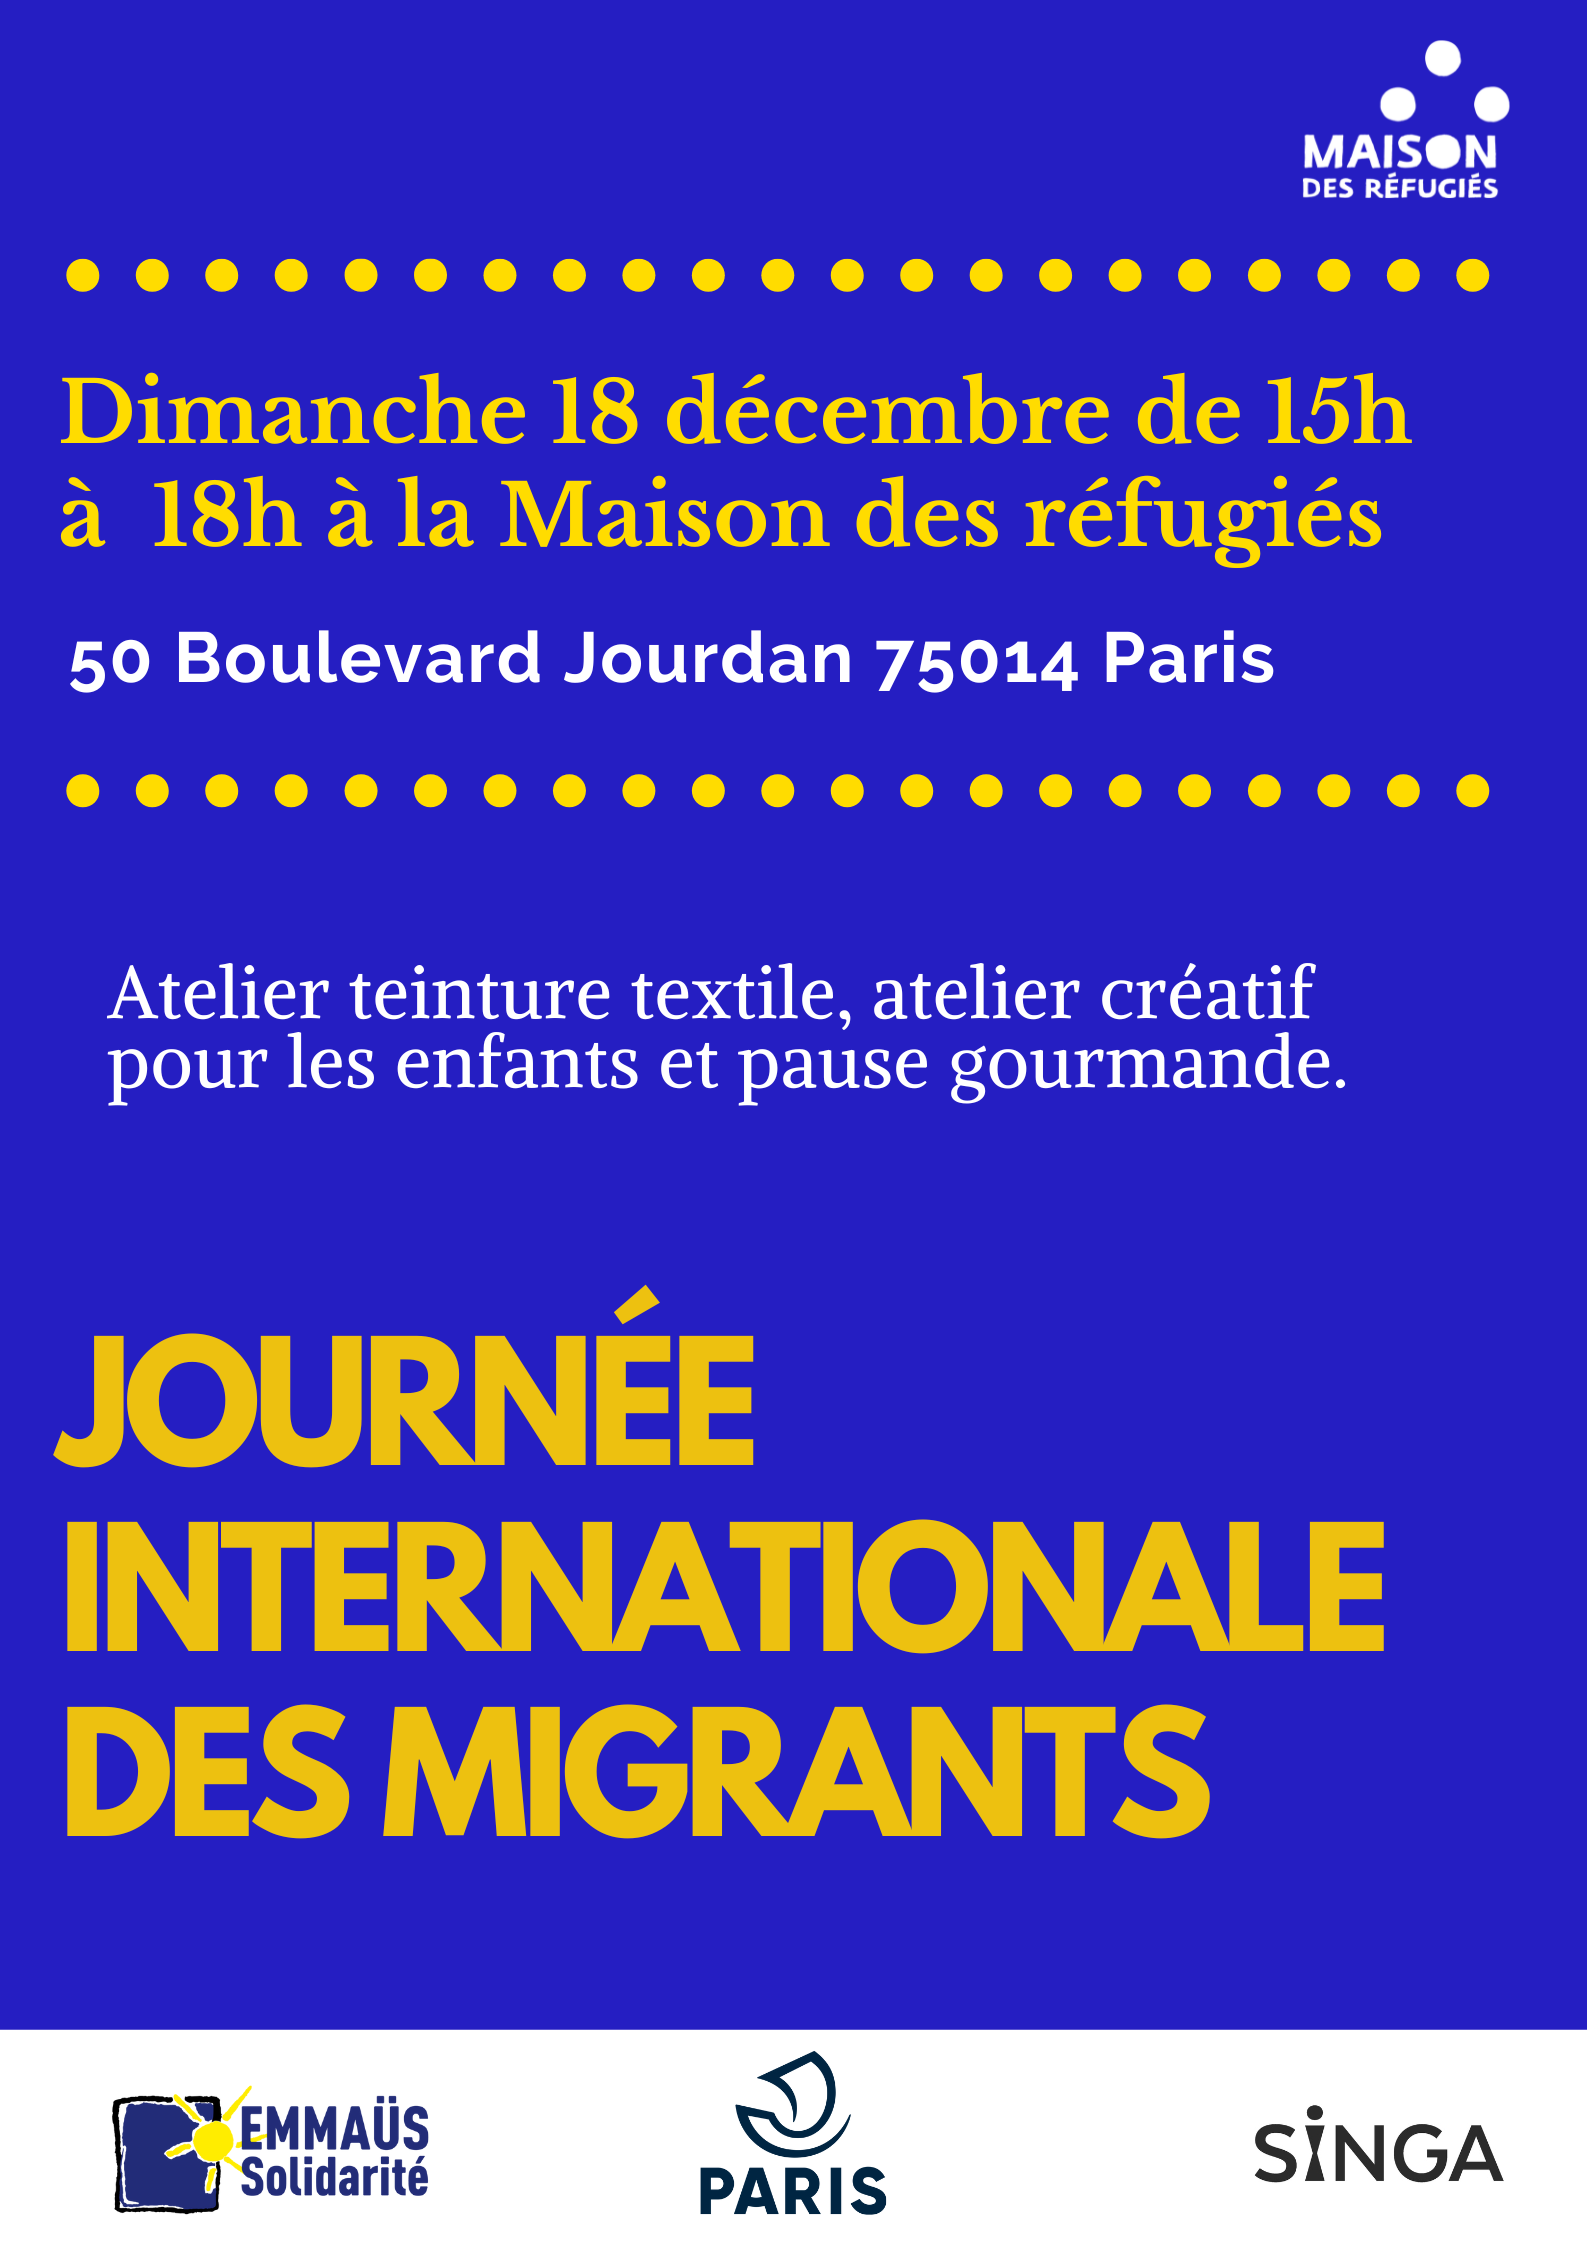 Participez à la Journée internationale des migrants